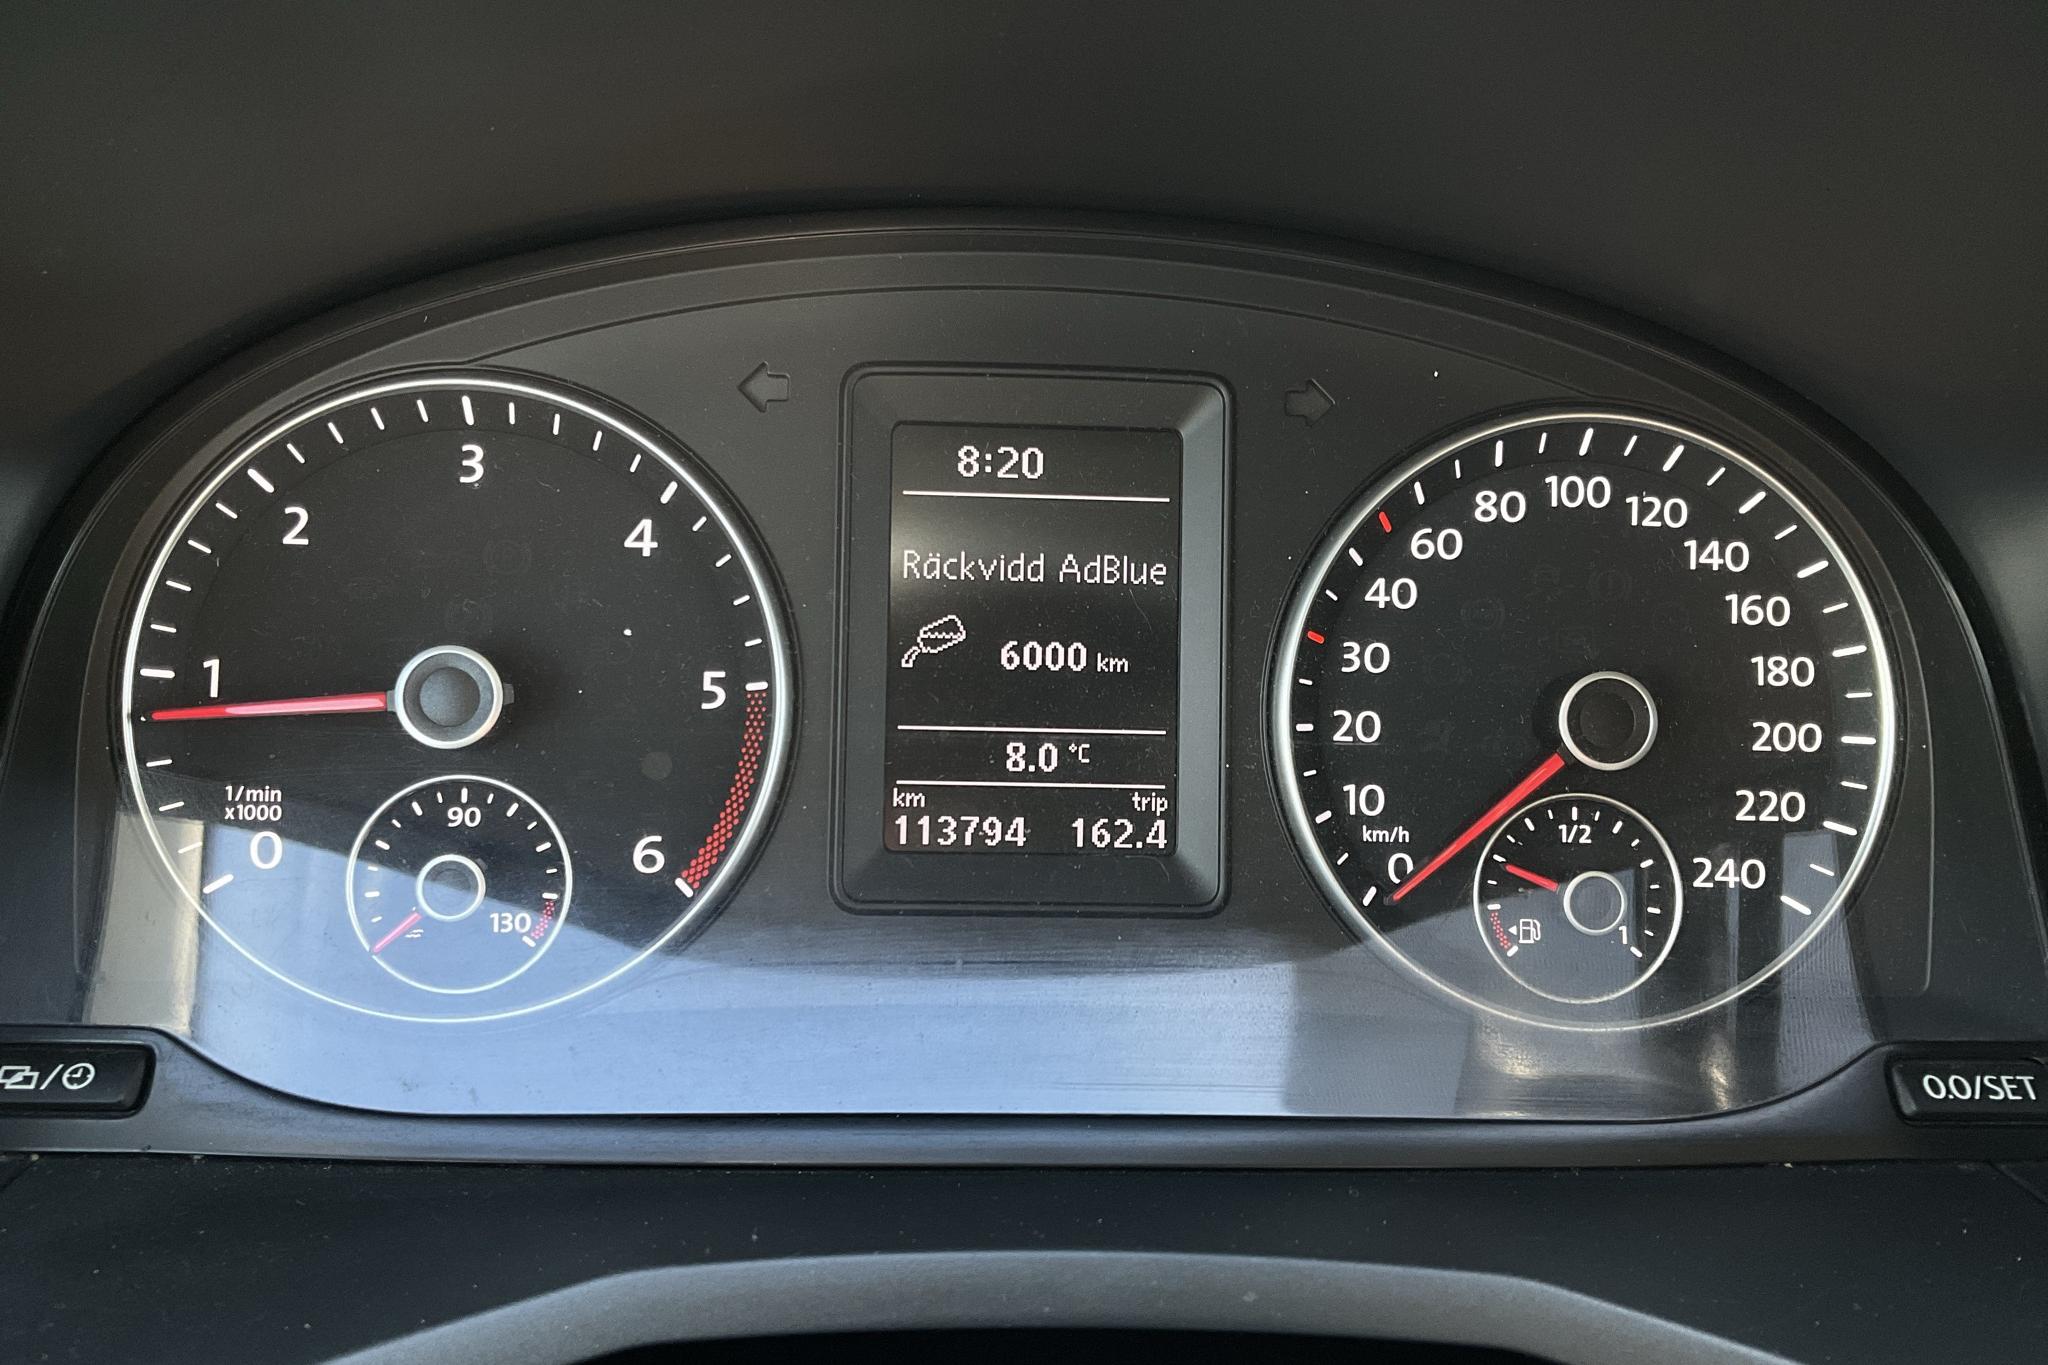 VW Caddy 2.0 TDI (75hk) - 113 800 km - Manual - white - 2018